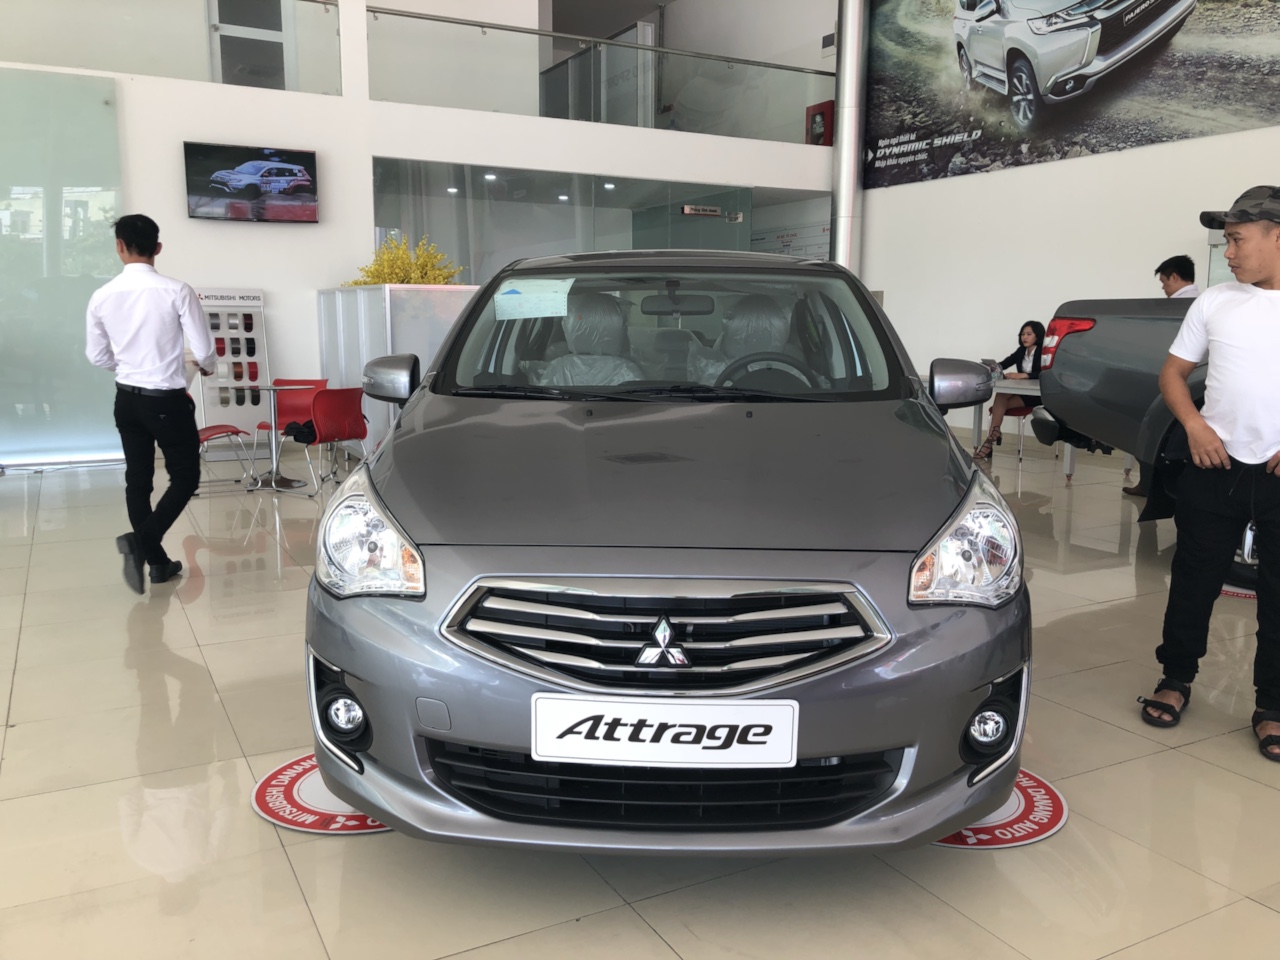 Mitsubishi Attrage MT Eco 2019 - [Giá sốc hè] Attrage nhập Thái giá tốt, siêu lợi xăng chỉ 5L/100k, chạy Grab số 1, cho góp 80%, LH ngay: 0905.91.01.99